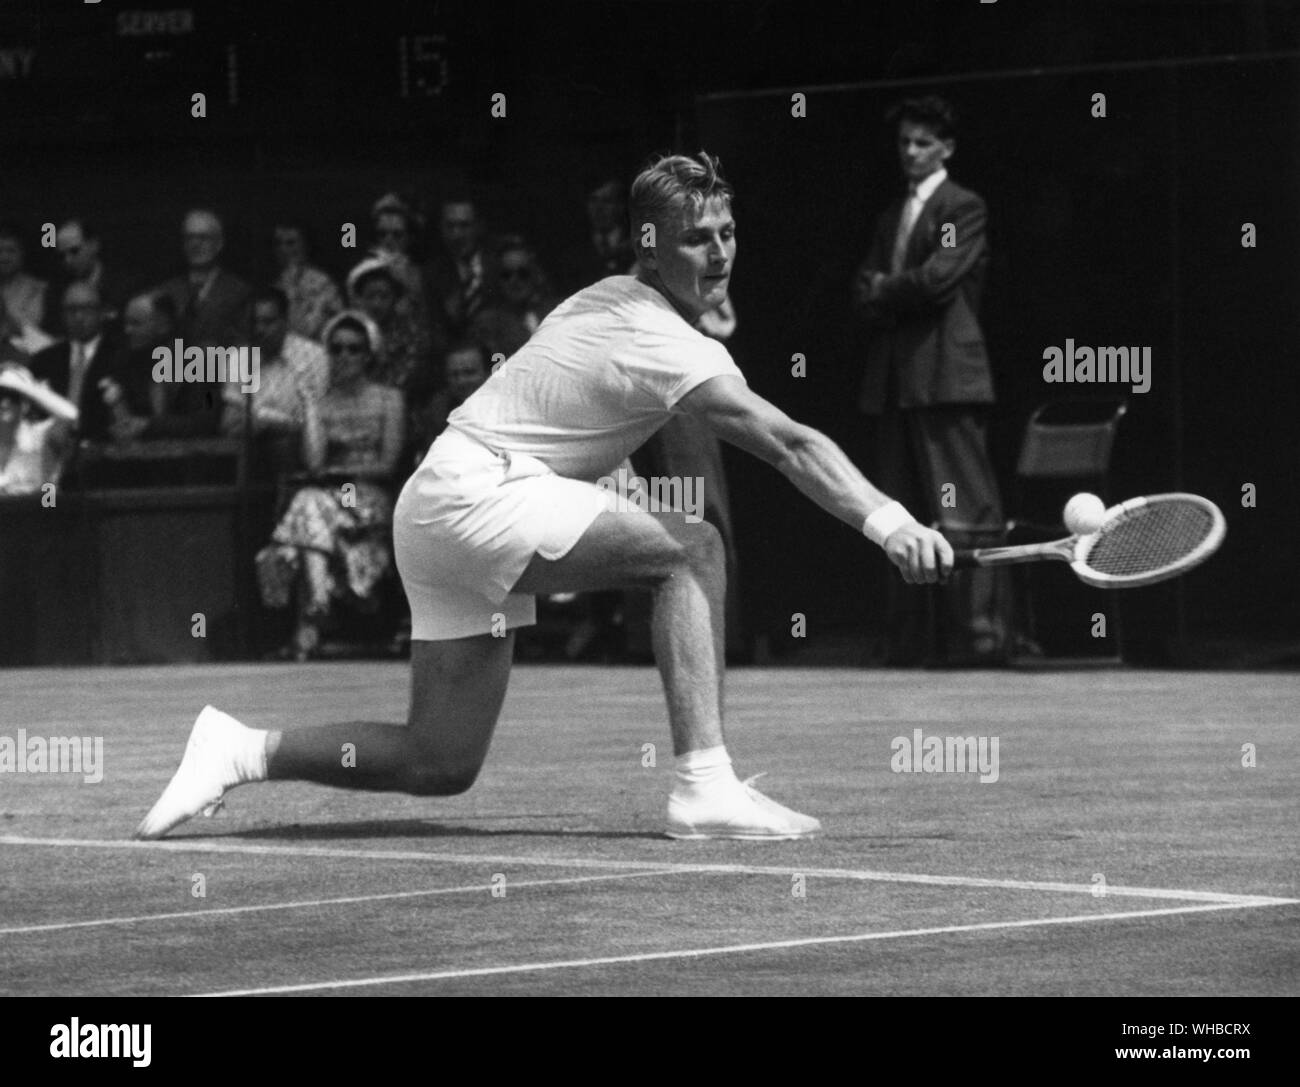 Lew Hoad - Australian giocatore di tennis - . Alan Lewis (Lew Hoad) (sopportato il 23 novembre 1934 in Glebe, Nuovo Galles del Sud, Australia, è morto il 3 luglio 1994 a Fuengirola, Spagna) è stato un campione del giocatore di tennis. classificato come uno dei 21 migliori giocatori di tutti i tempi. Per cinque anni consecutivi, a partire dal 1952, egli è stato classificato nel mondo Top Ten per amatori, raggiungendo il n. 1 spot in 1956.. Foto Stock